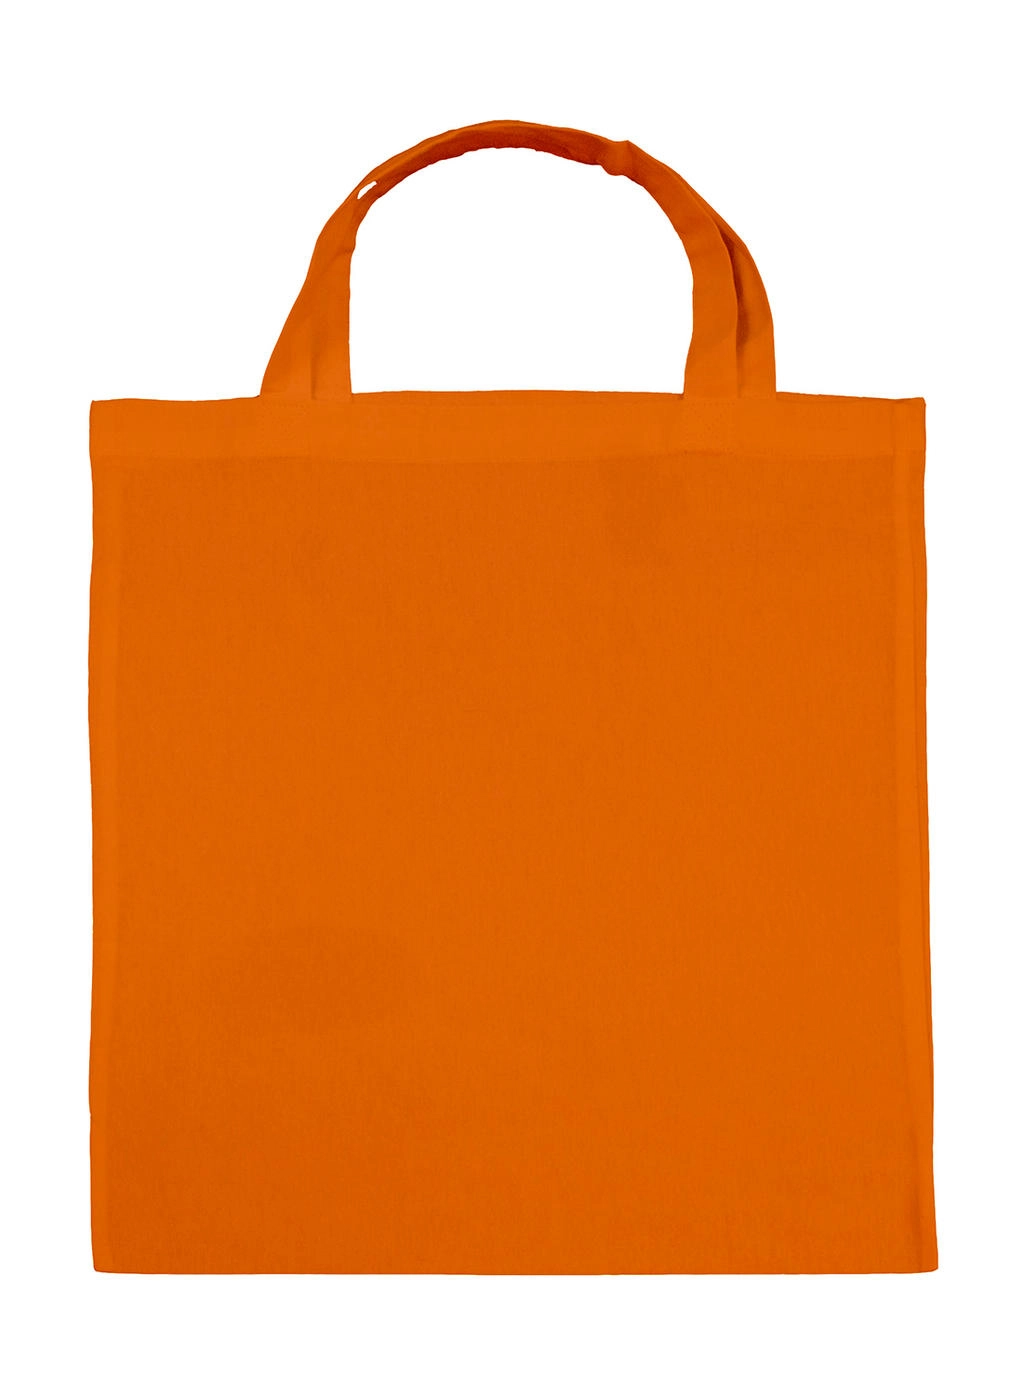 Cotton Shopper SH zum Besticken und Bedrucken in der Farbe Tangerine mit Ihren Logo, Schriftzug oder Motiv.